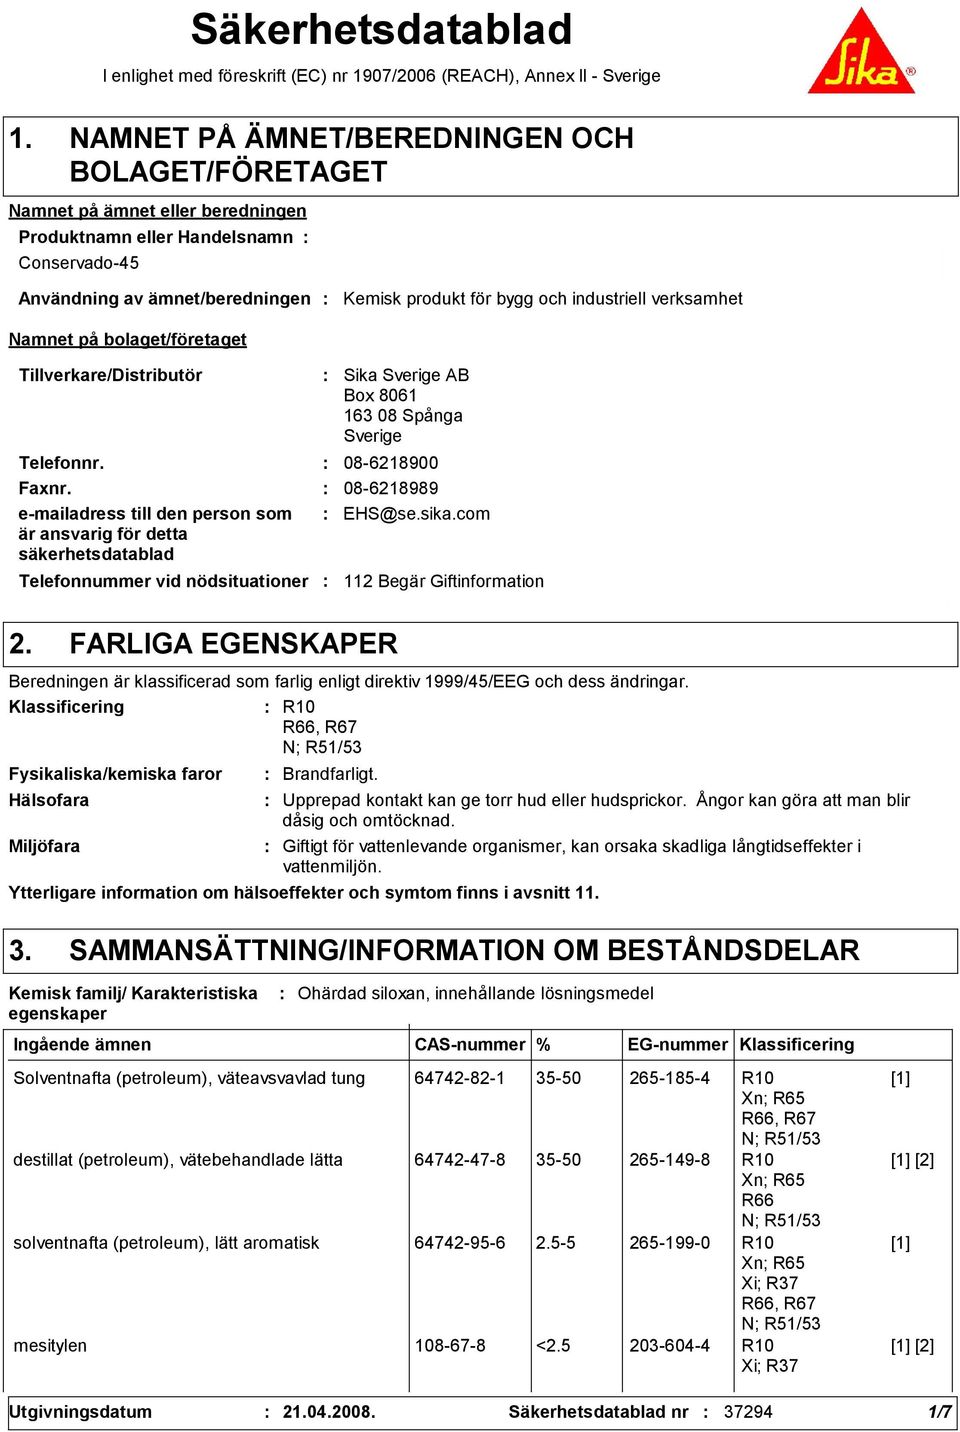 Spånga Sverige Telefonnr. 08-6218900 Faxnr. 08-6218989 e-mailadress till den person som är ansvarig för detta säkerhetsdatablad EHS@se.sika.